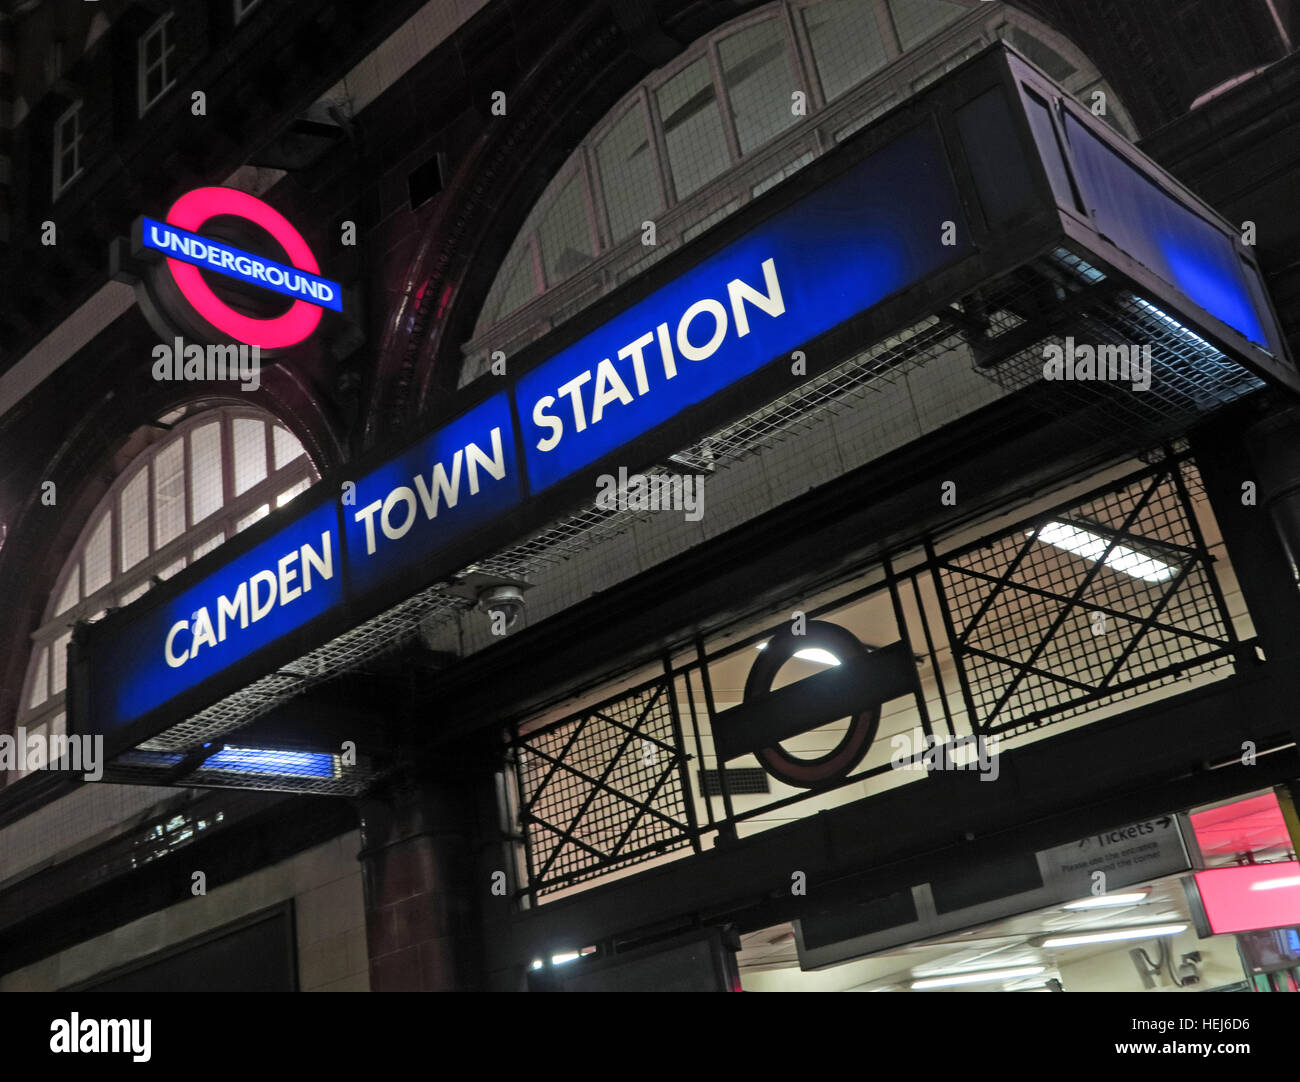 La station Camden Town dans la nuit, au nord de Londres, Angleterre, RU Banque D'Images